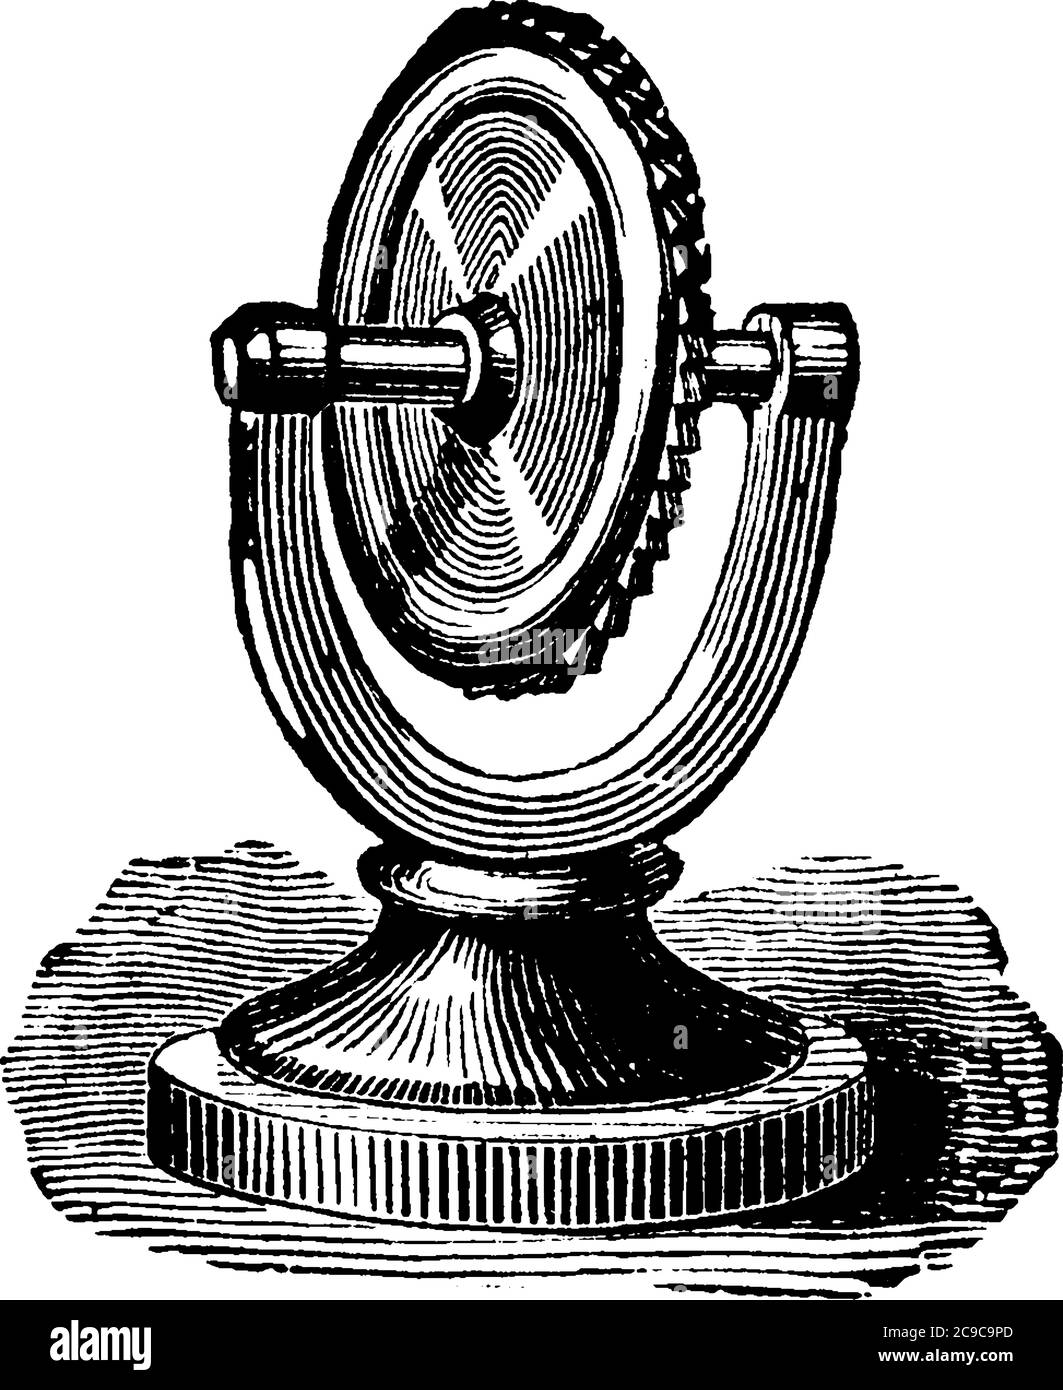 La ruota Savart è un dispositivo acustico che prende il nome dal fisico francese Félix Savart, disegno di linee d'epoca o illustrazione dell'incisione. Illustrazione Vettoriale